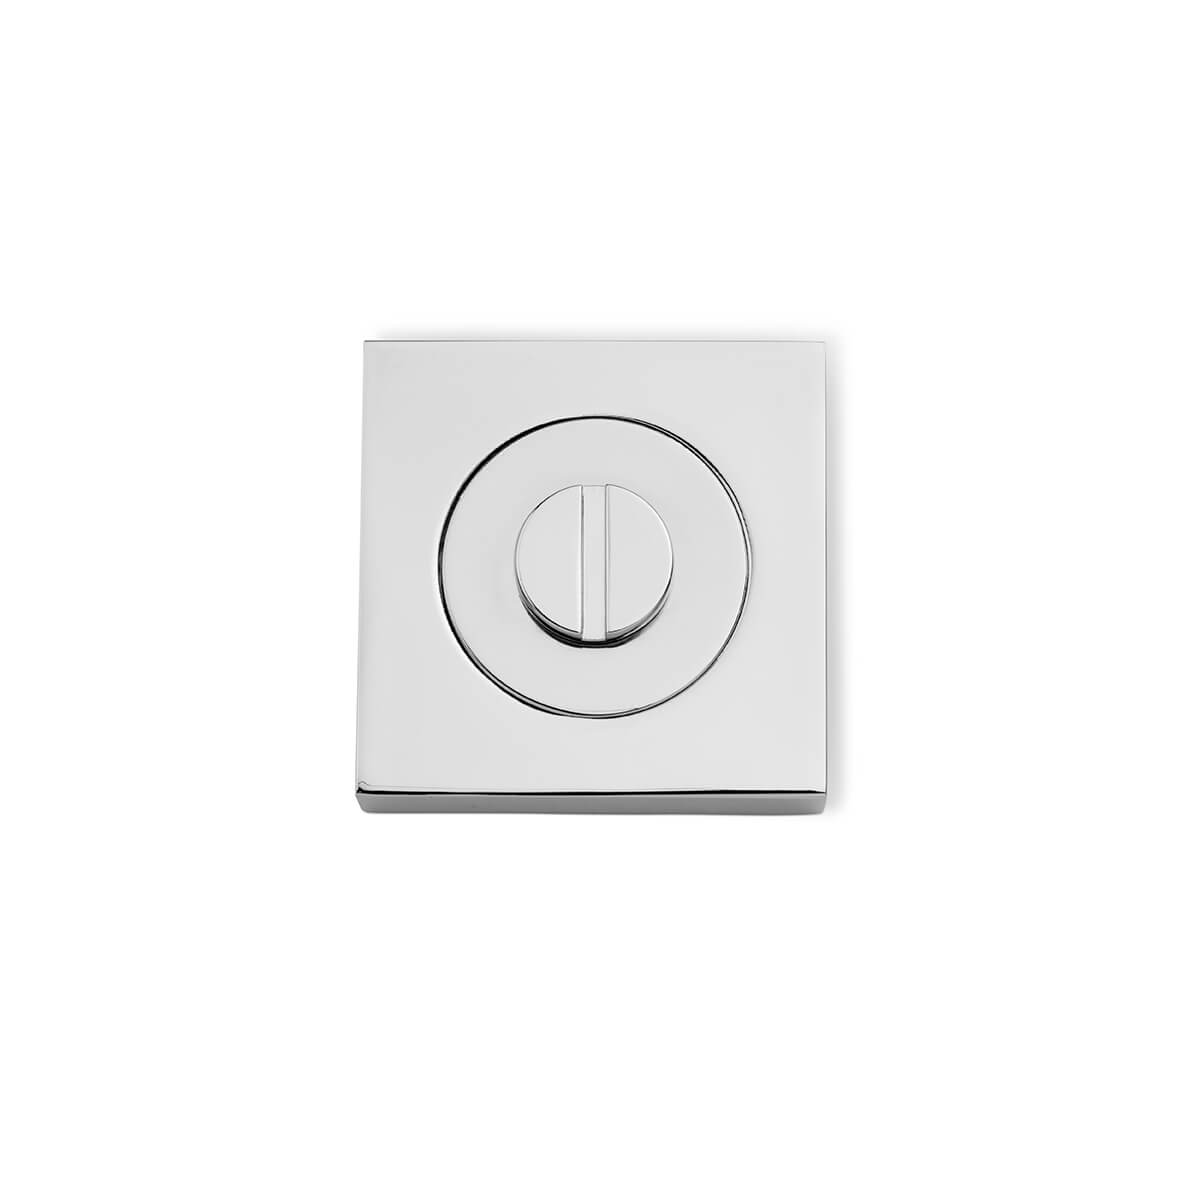 53mm Square Escape Button Escutcheon - Chrome Plate